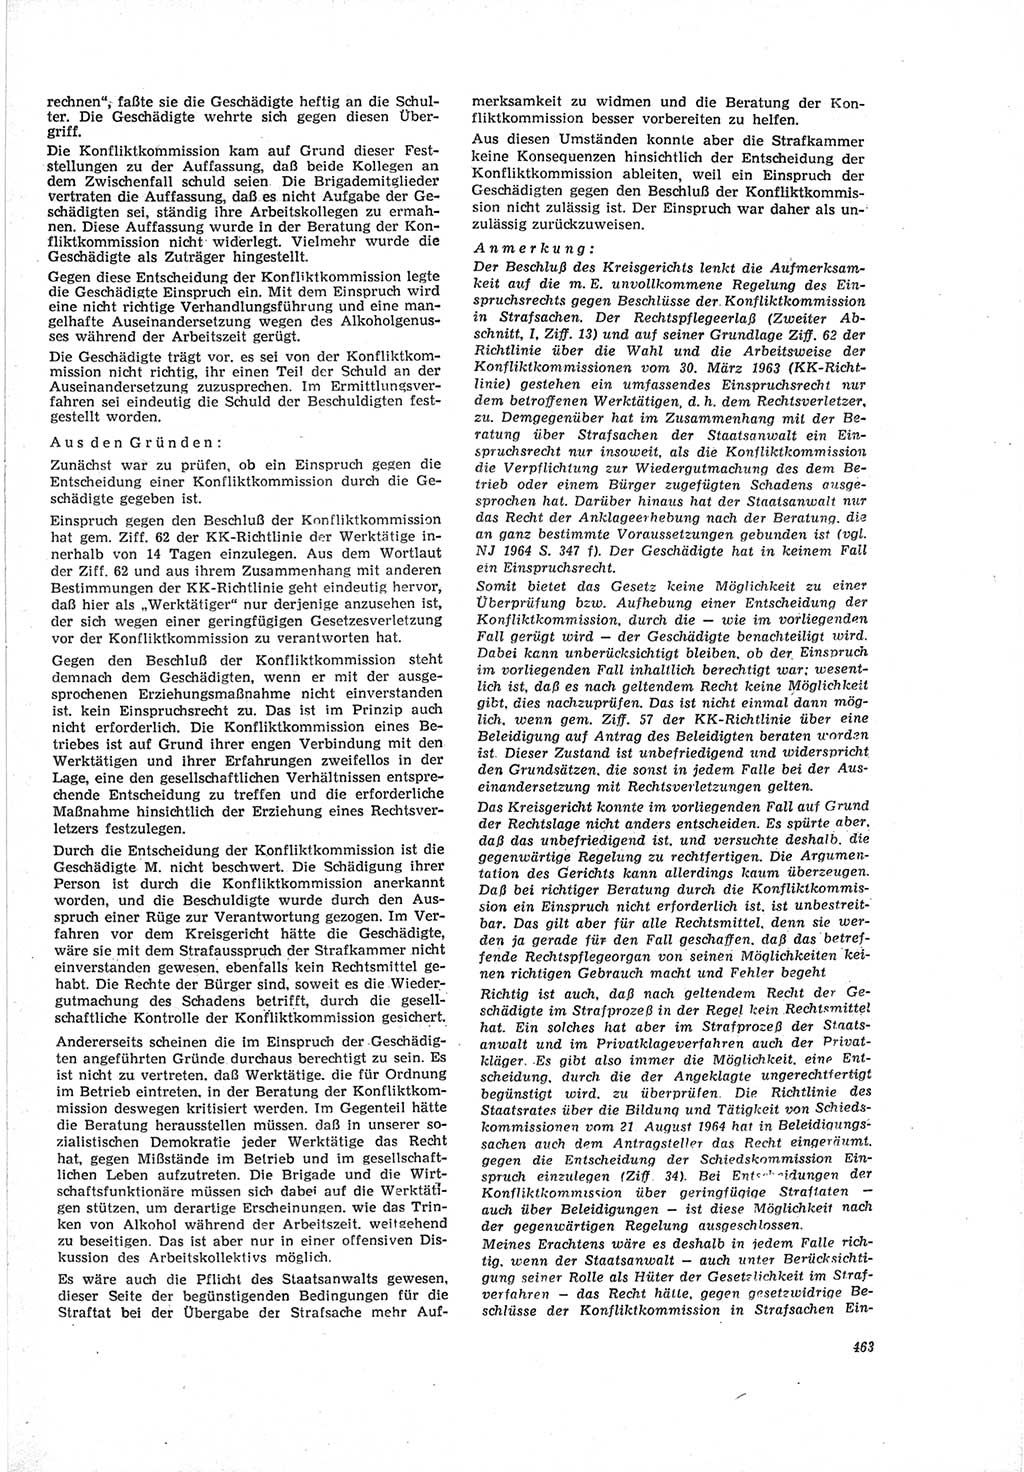 Neue Justiz (NJ), Zeitschrift für Recht und Rechtswissenschaft [Deutsche Demokratische Republik (DDR)], 19. Jahrgang 1965, Seite 463 (NJ DDR 1965, S. 463)